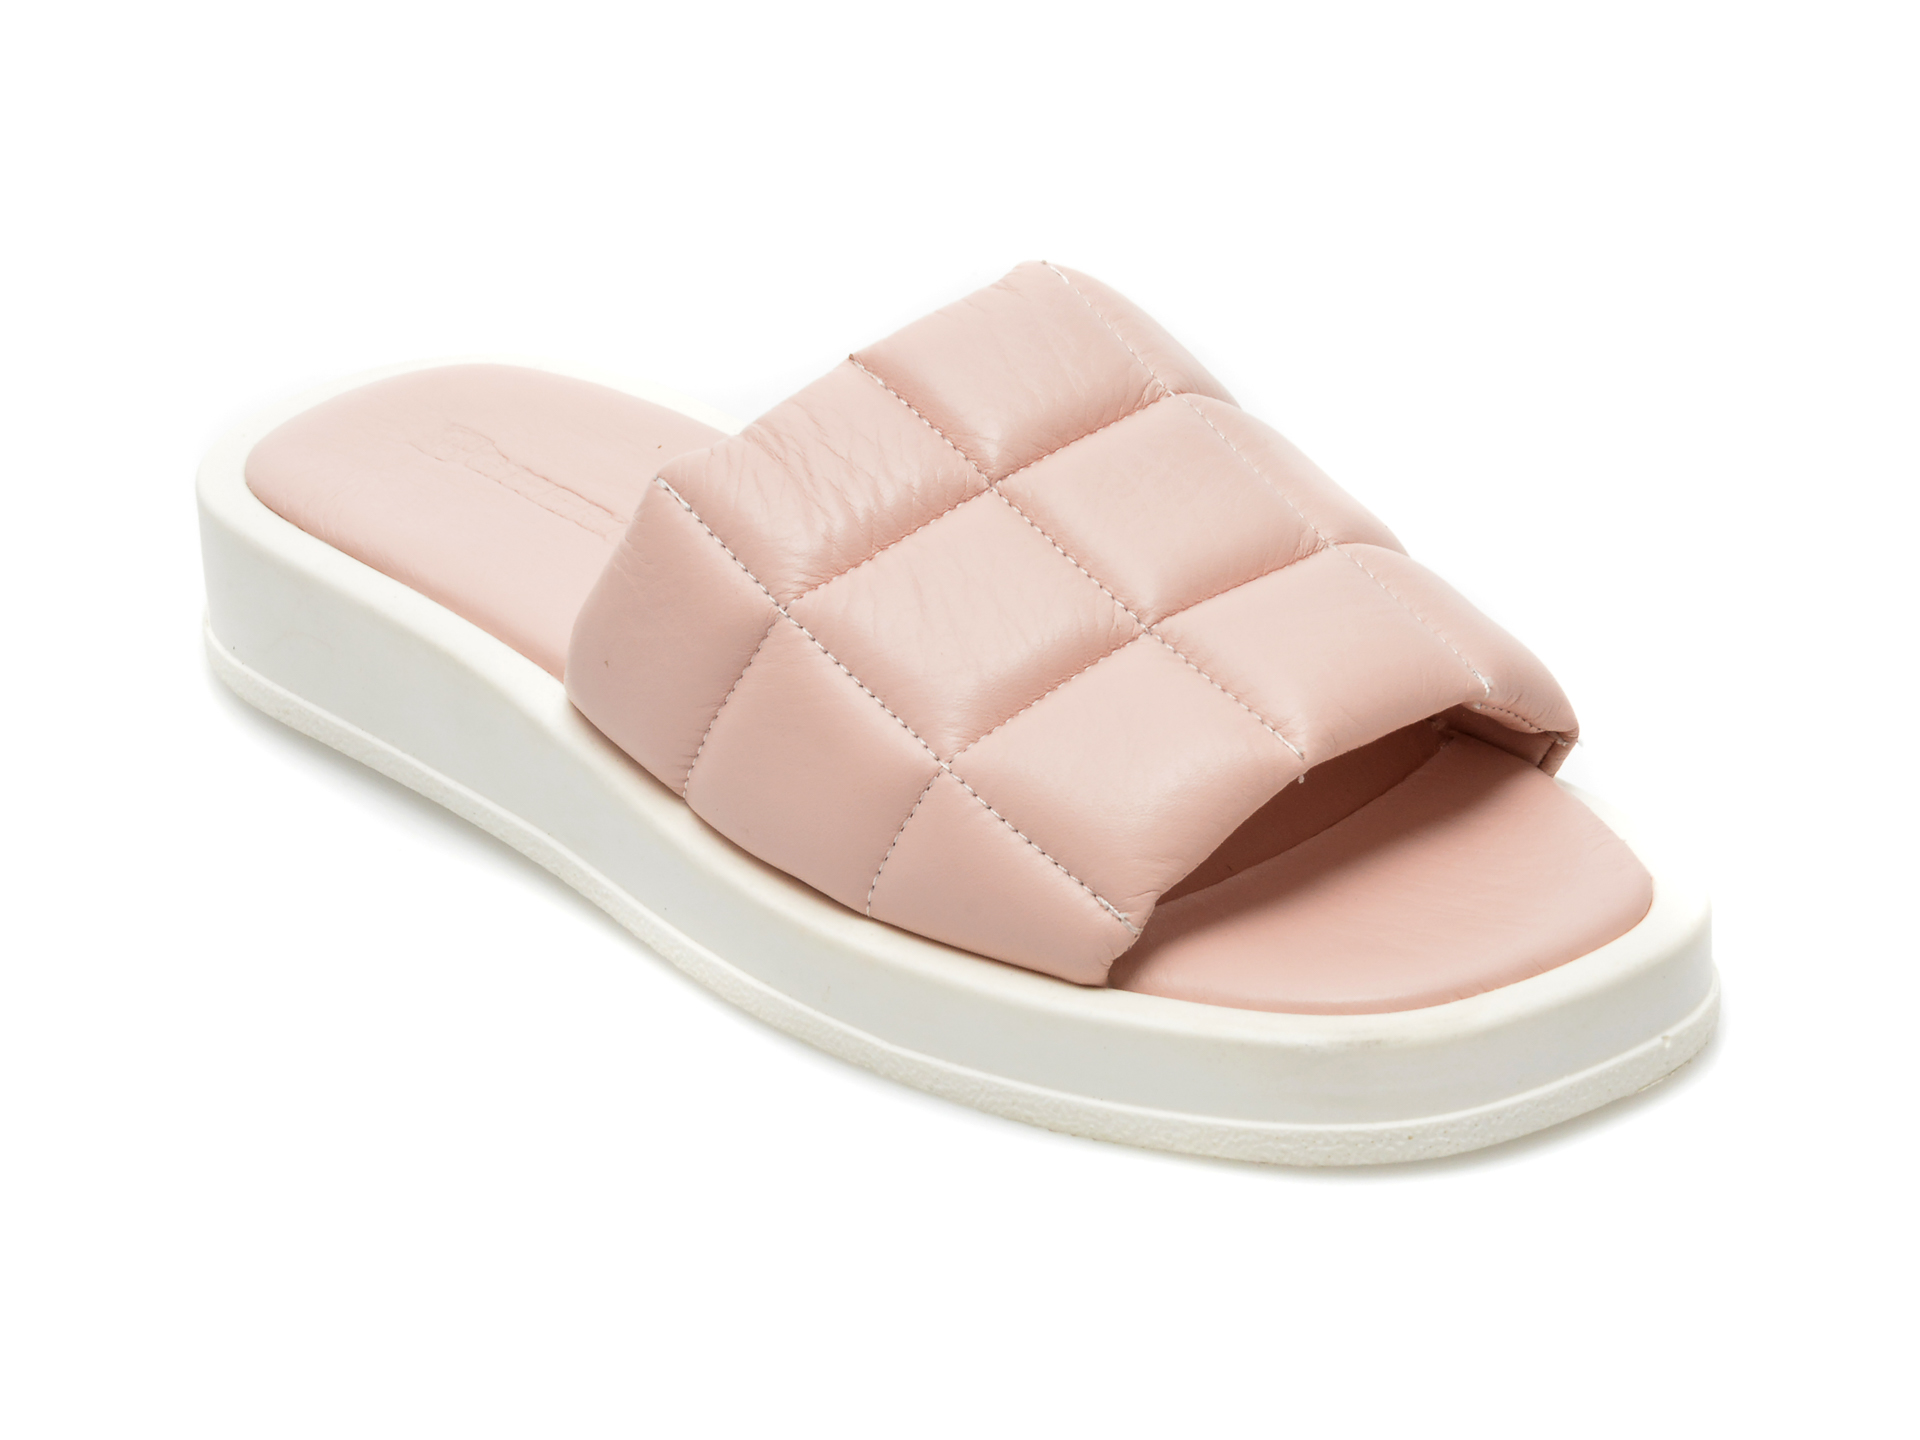 Papuci GUERO roz, 5005, din piele naturala